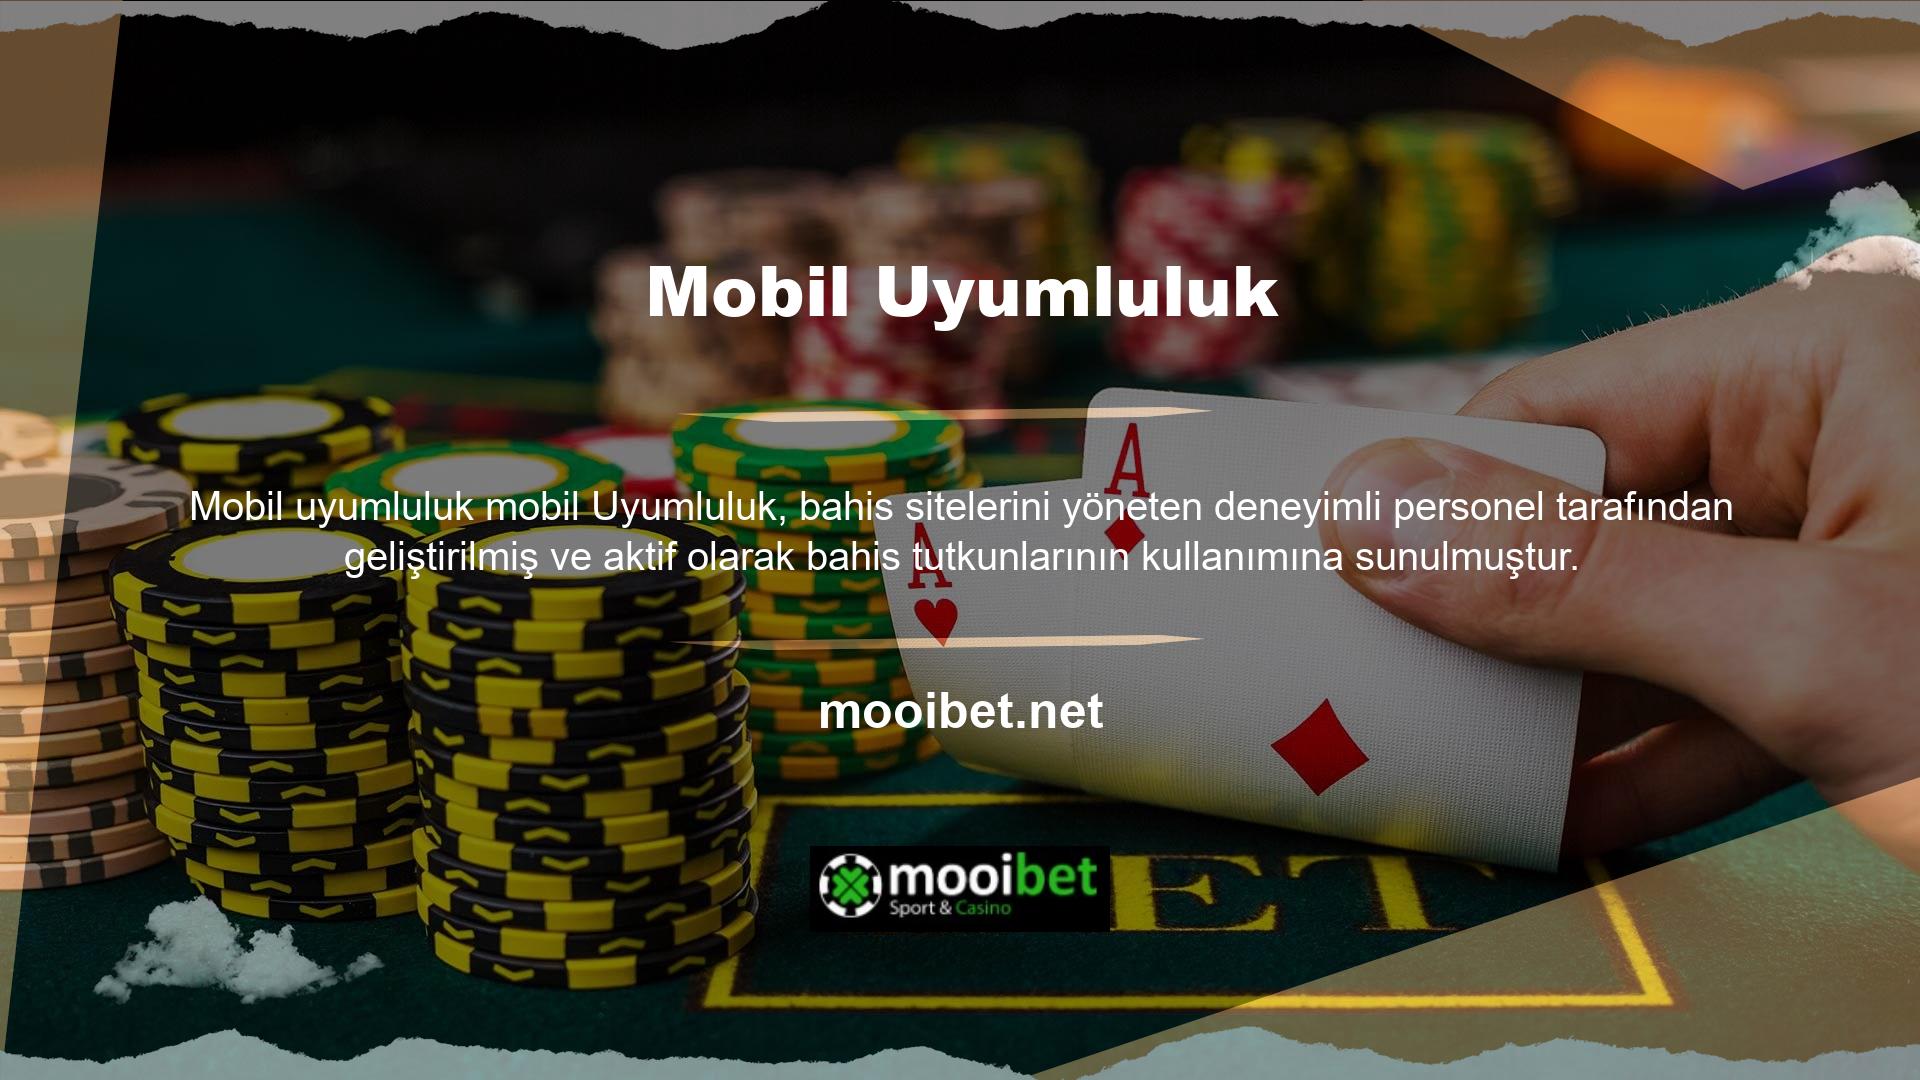 Mooibet kullanıcılarına sunduğu fırsatlardan biri de mobil bahis sitesi olarak faaliyet göstermesidir